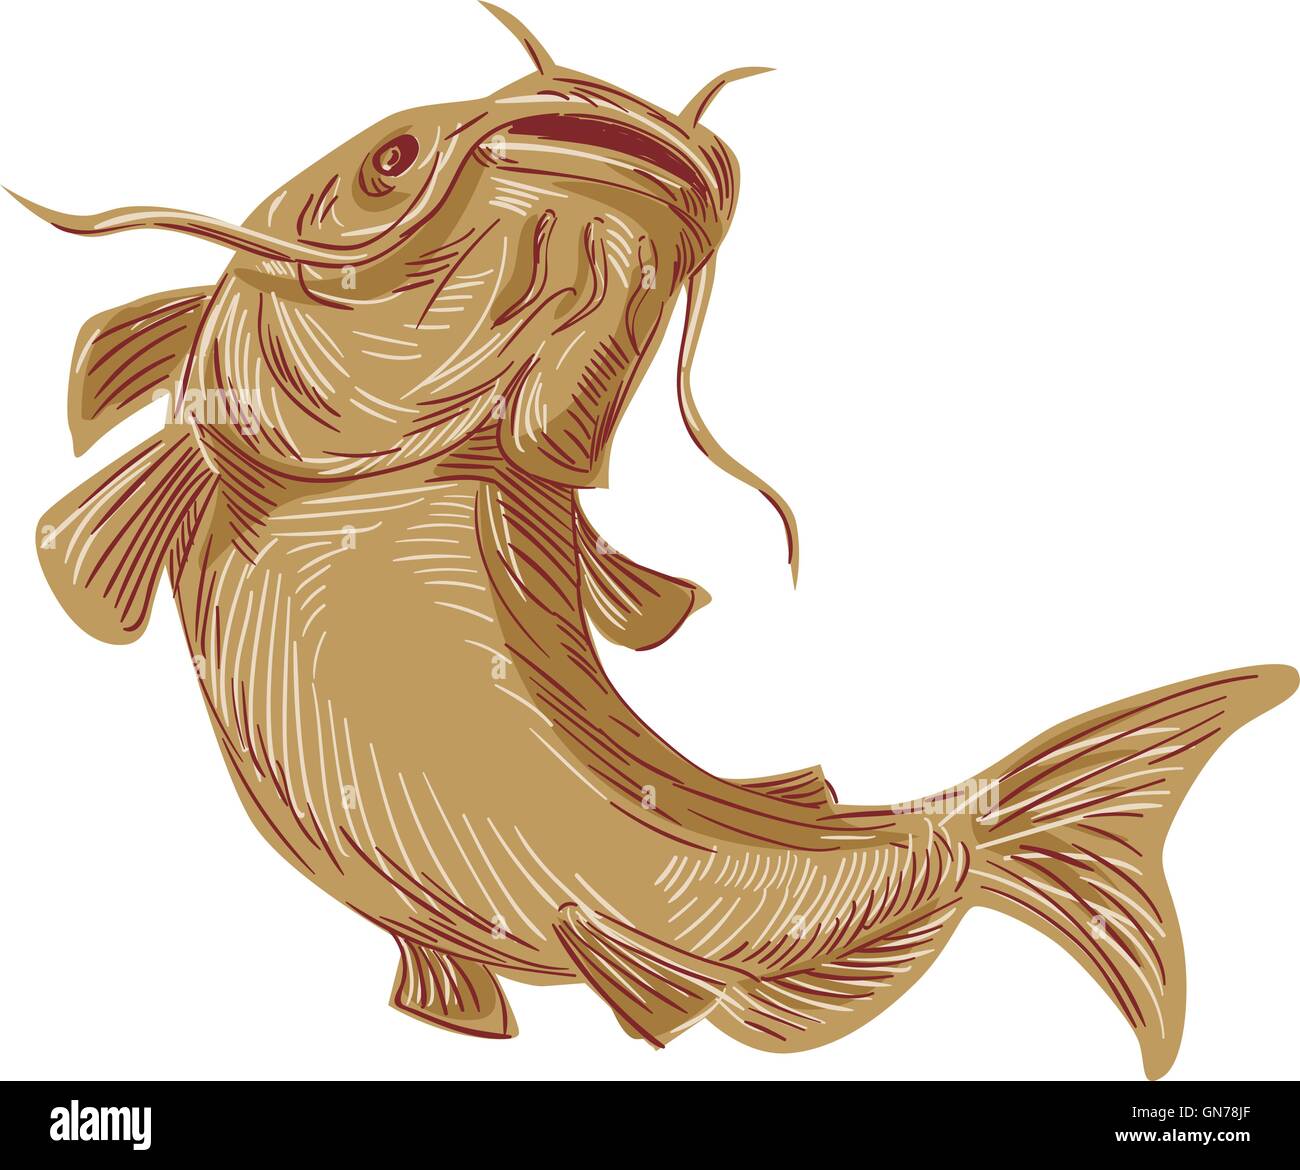 Styleillustration croquis dessin d'un poisson à nageoires aussi appelé poisson-chat, chat de boue ou polliwogs chucklehead allant jusqu'vue de l'avant ensemble isolées sur fond blanc. Illustration de Vecteur